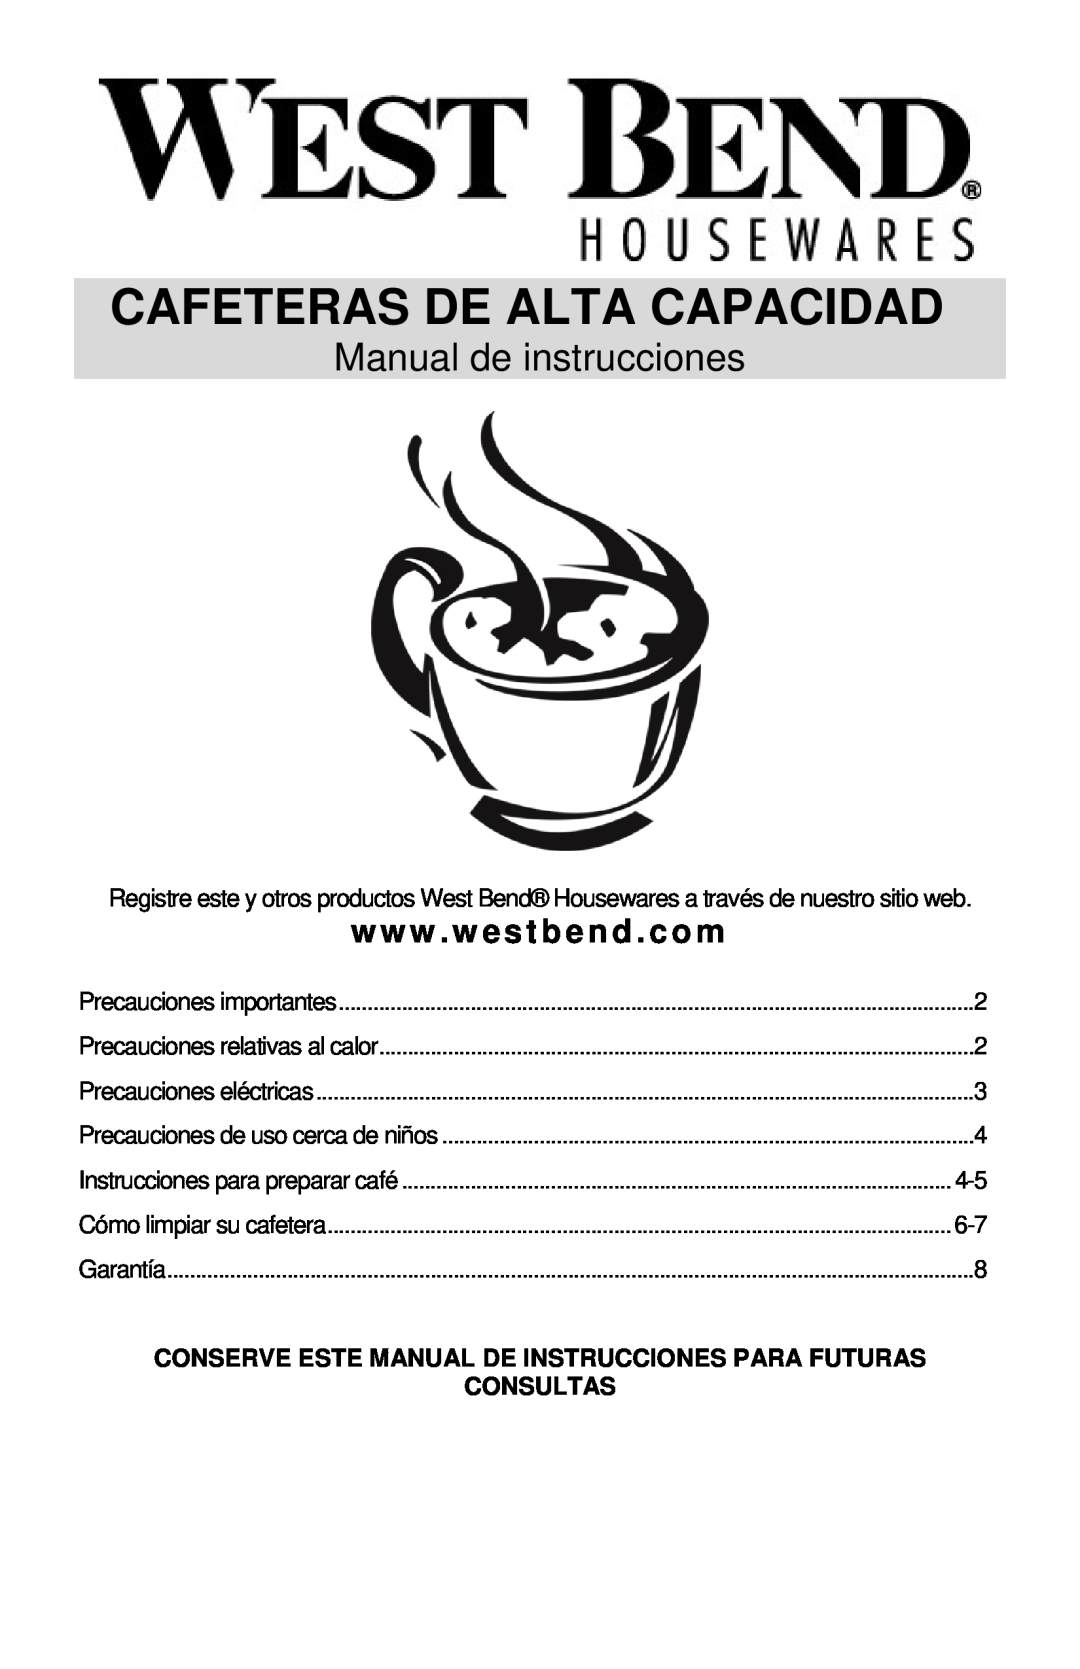 West Bend LARGE CAPACITY COFFEEMAKERS Cafeteras De Alta Capacidad, Manual de instrucciones, www . westbend . com, Garantía 